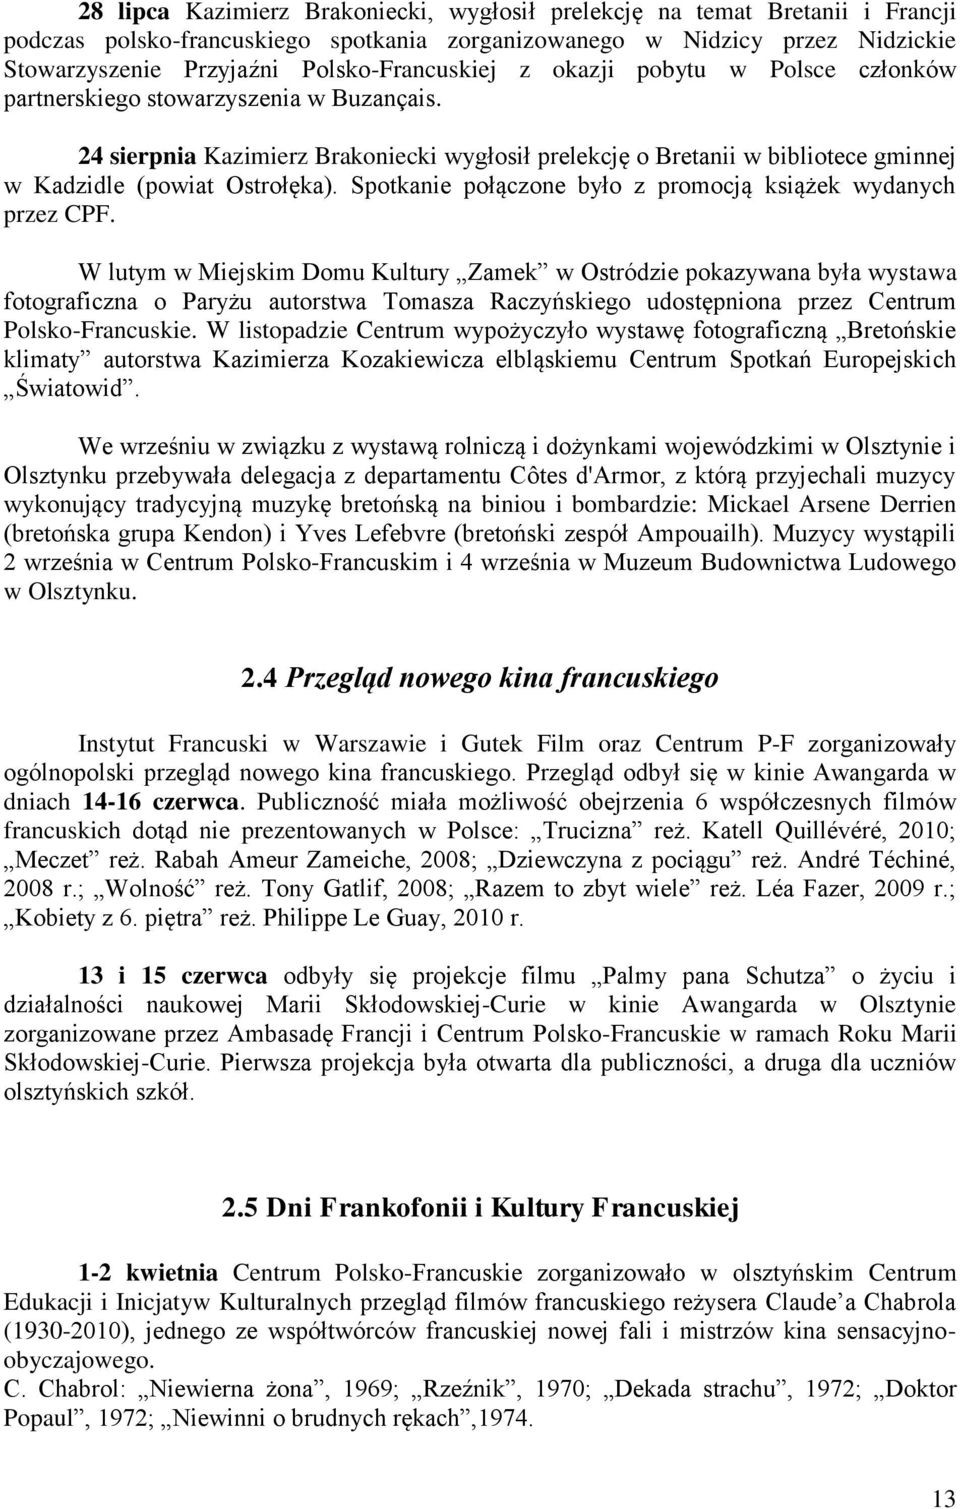 24 sierpnia Kazimierz Brakoniecki wygłosił prelekcję o Bretanii w bibliotece gminnej w Kadzidle (powiat Ostrołęka). Spotkanie połączone było z promocją książek wydanych przez CPF.